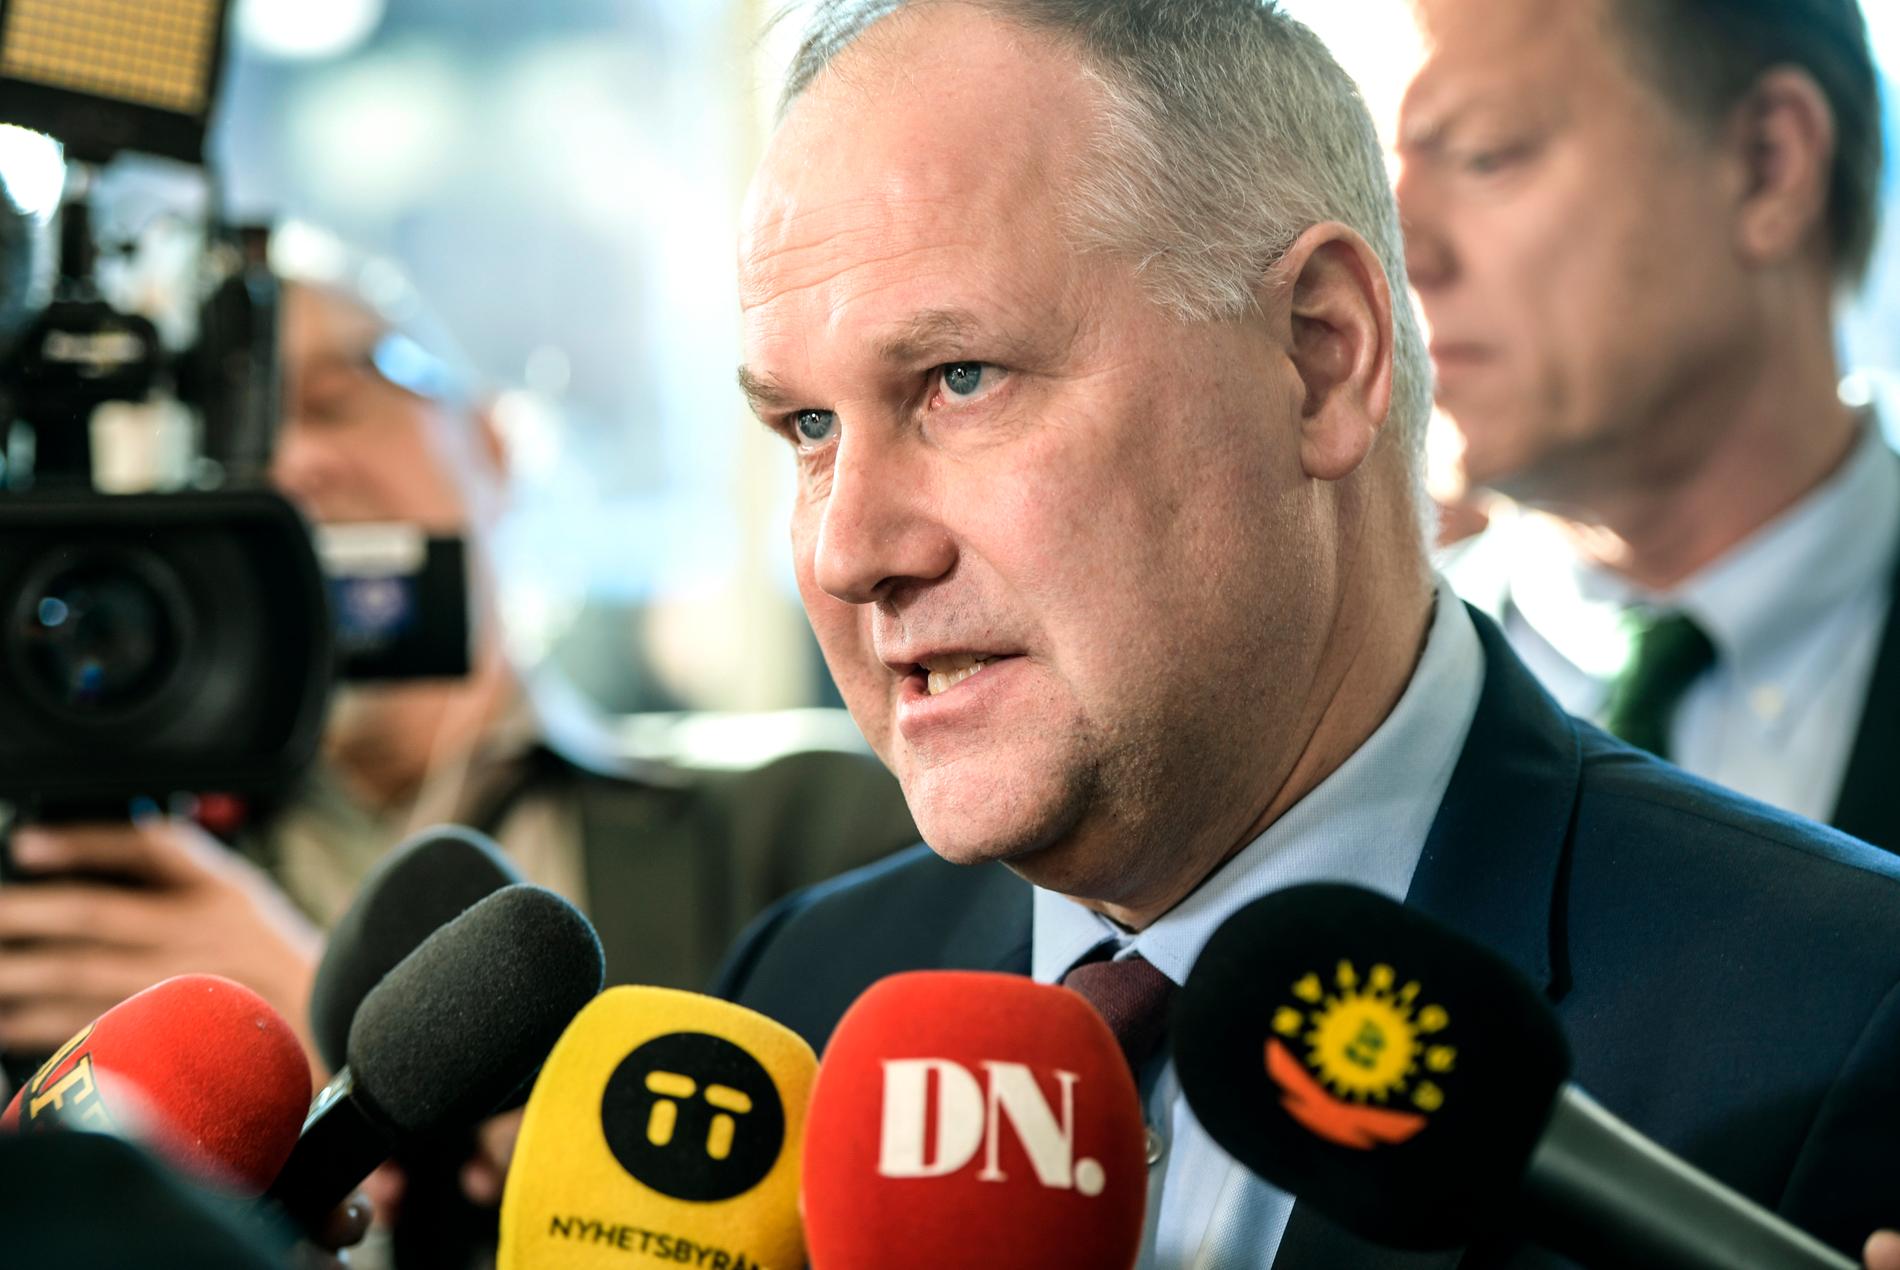 Vänsterpartiet och partiledare Jonas Sjöstedt var i allas fokus inför pressträffen där beskedet lämnades.